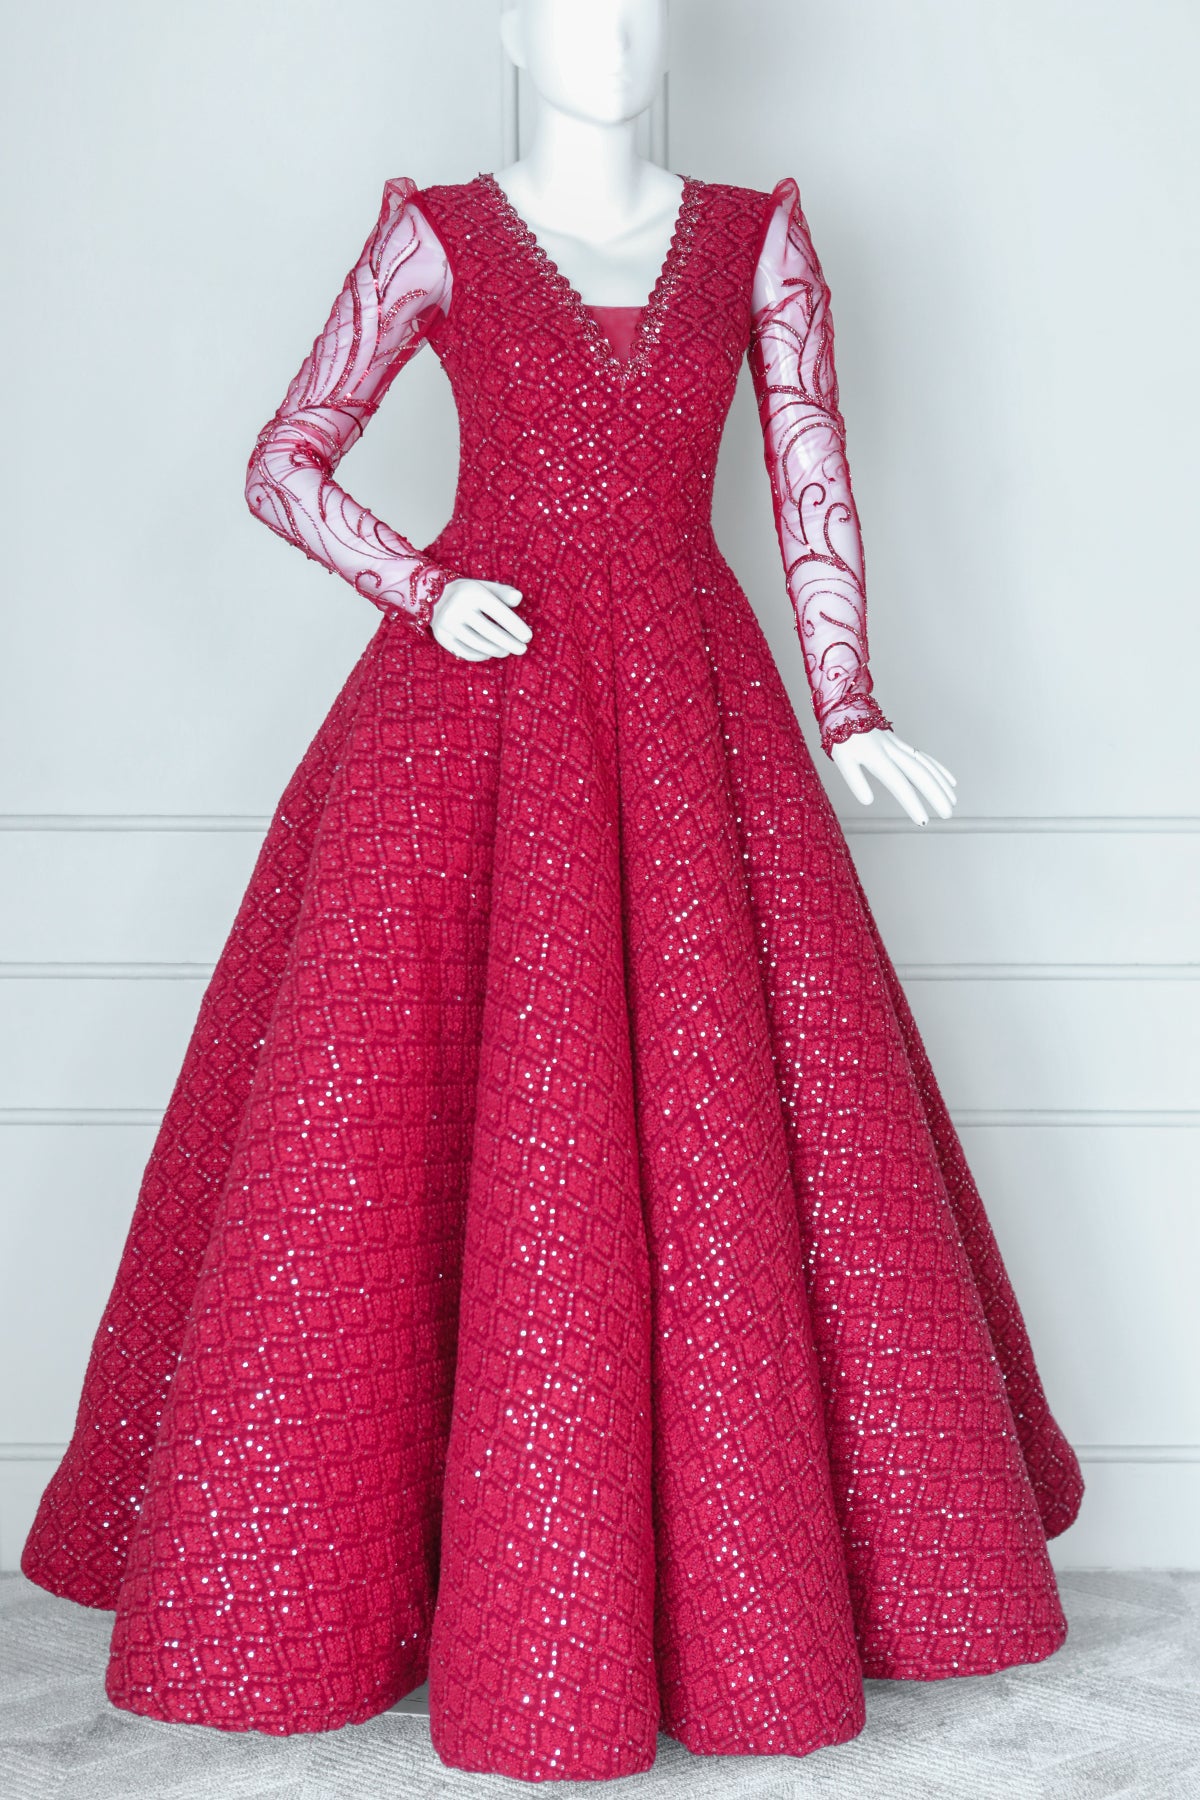 Wonderland by Lilian: Regency Era Ball Gowns | Buy Now – WonderlandByLilian